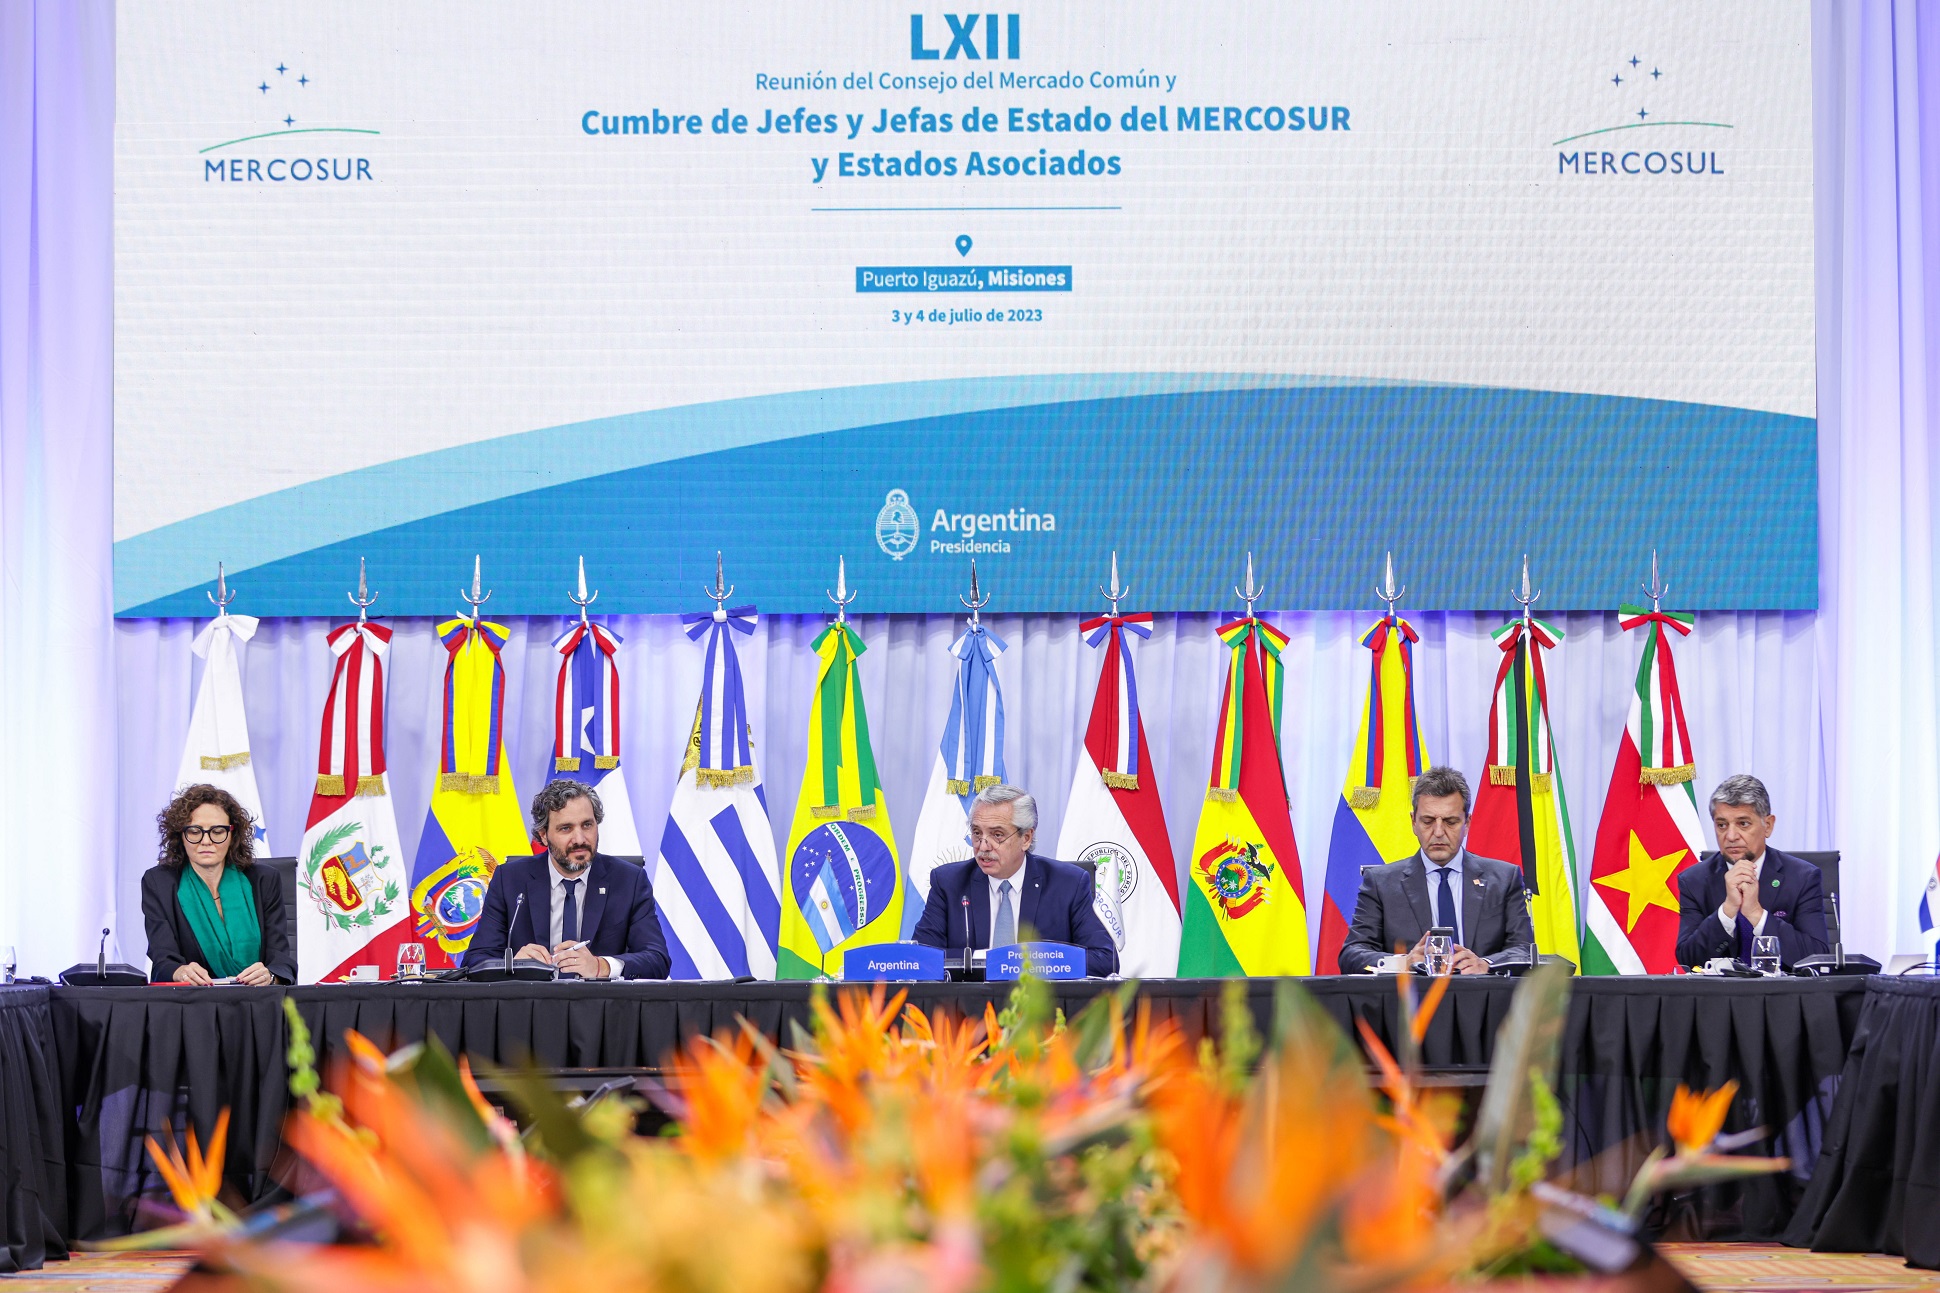 Alberto Fernández: “El MERCOSUR es el proceso de integración más sólido que la América del Sur ha desplegado”